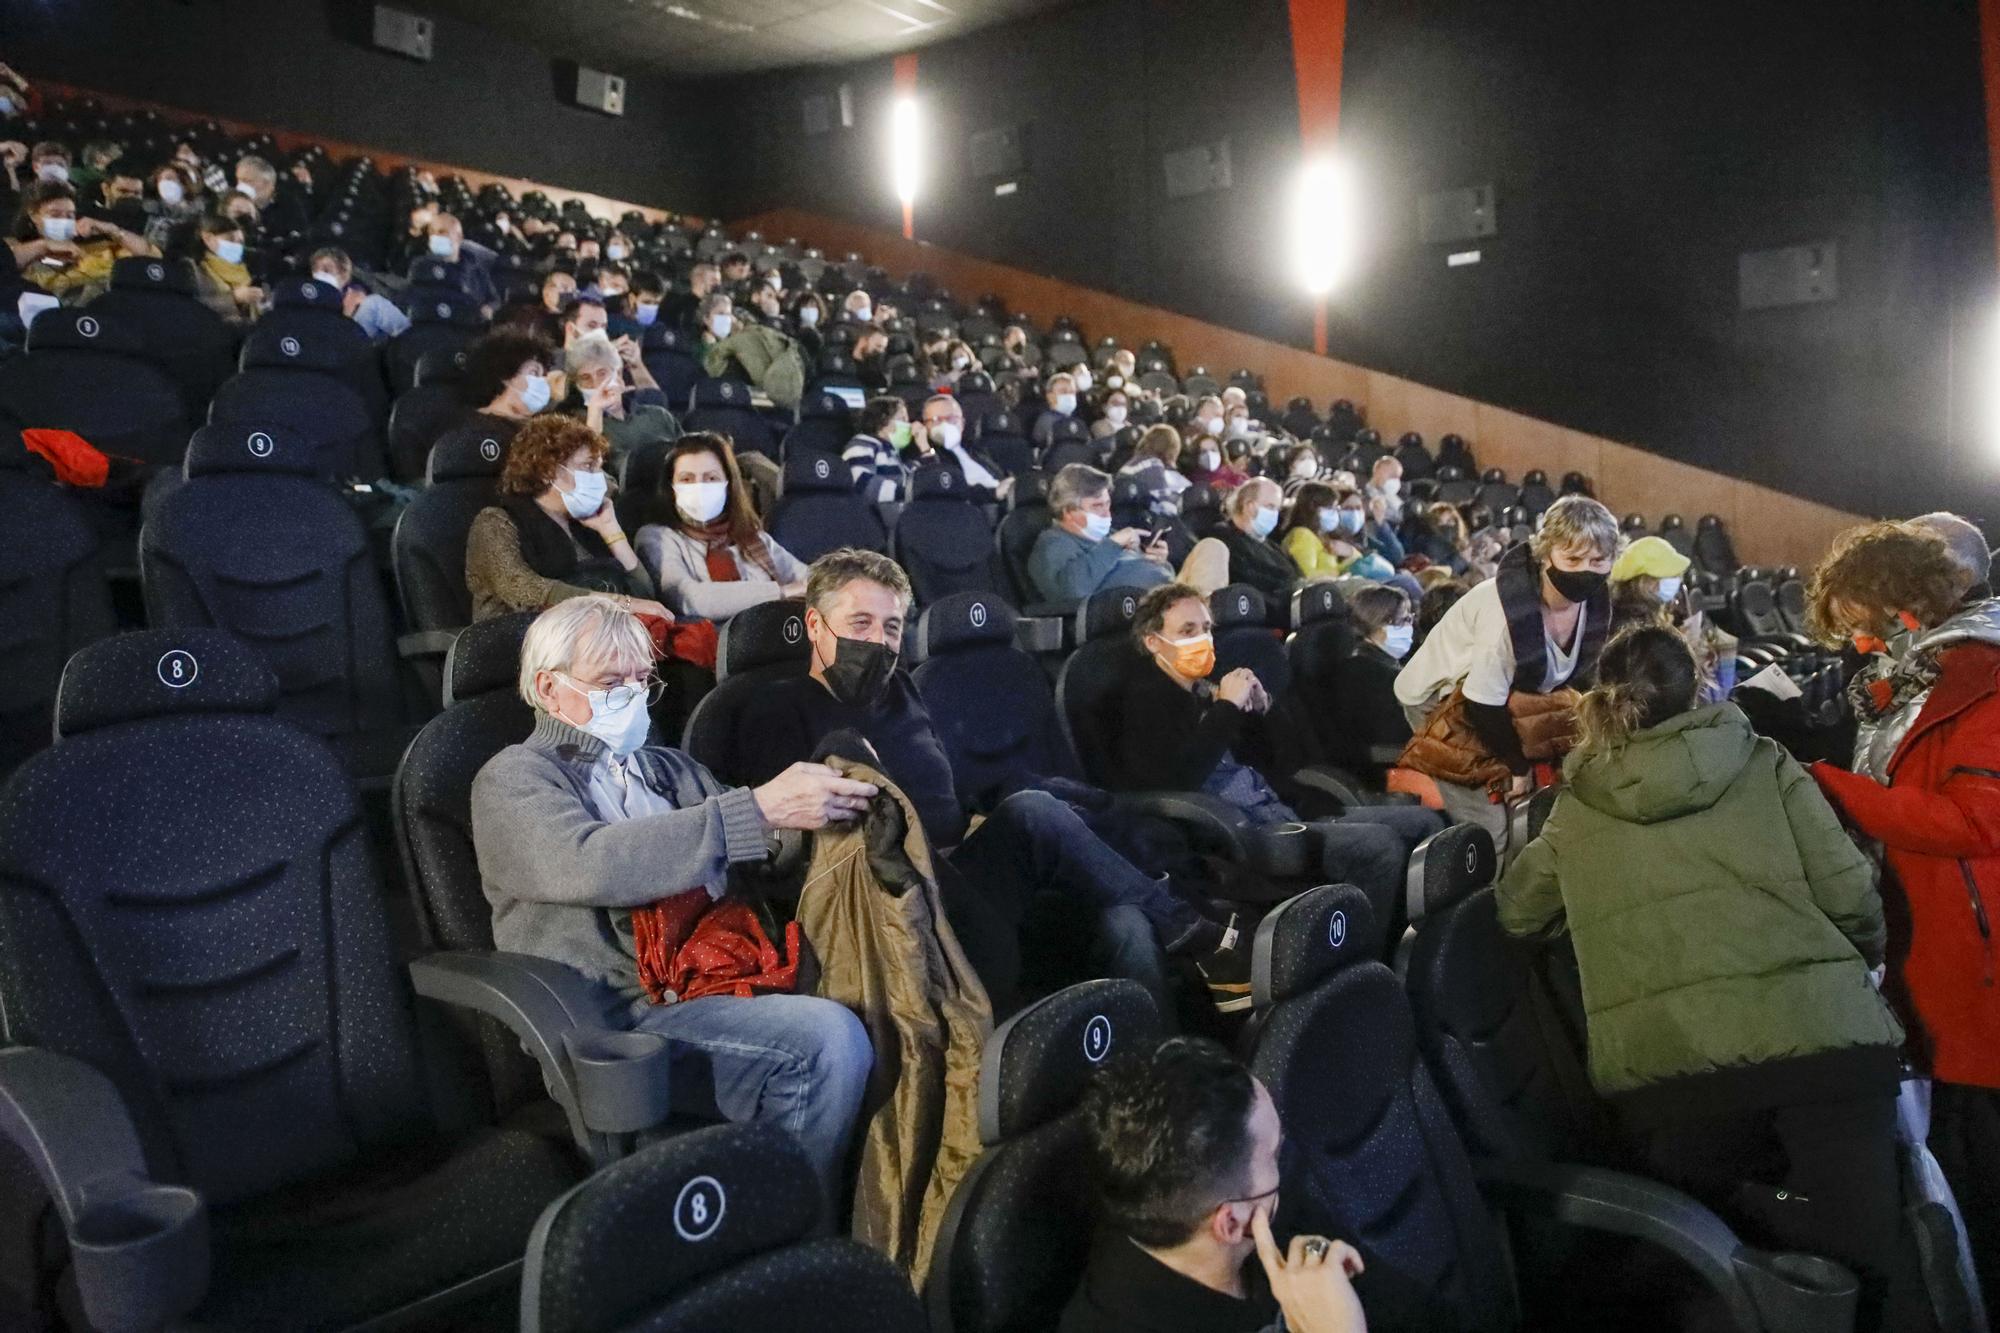 Así es el cine premium de Gijón: asientos reclinables y todas las comodidades